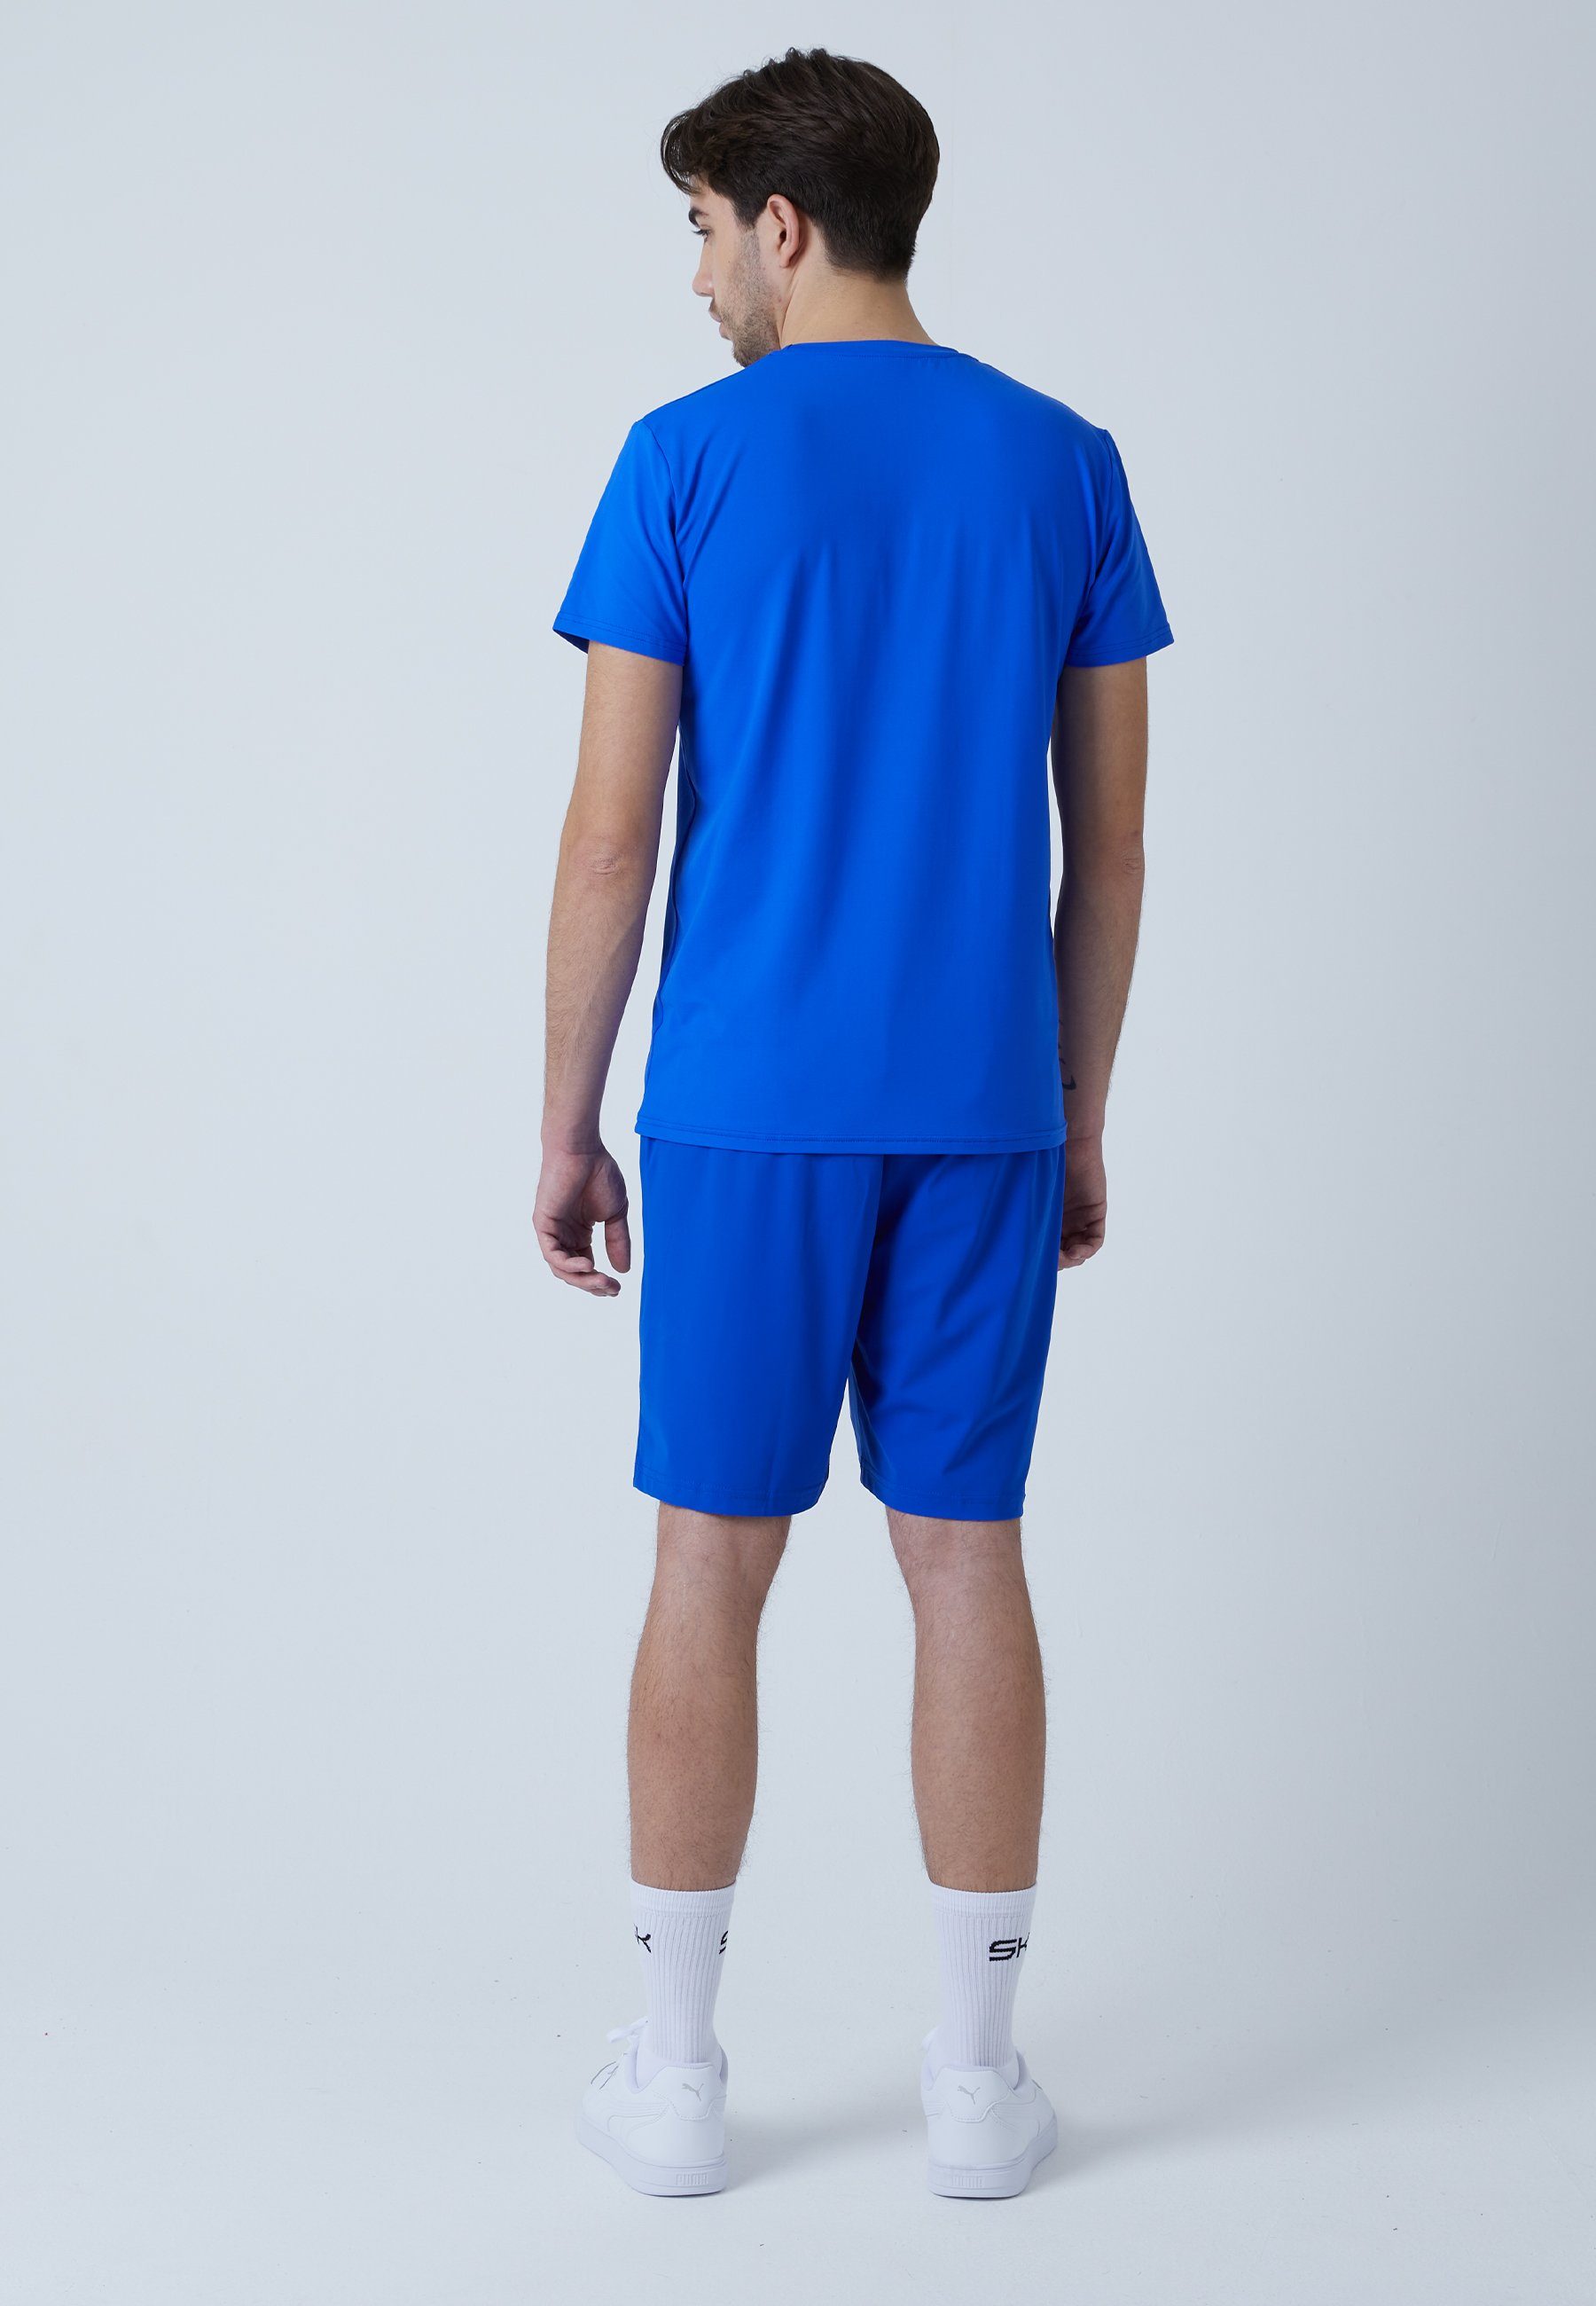 Funktionsshirt & Jungen T-Shirt Herren Tennis SPORTKIND kobaltblau Rundhals